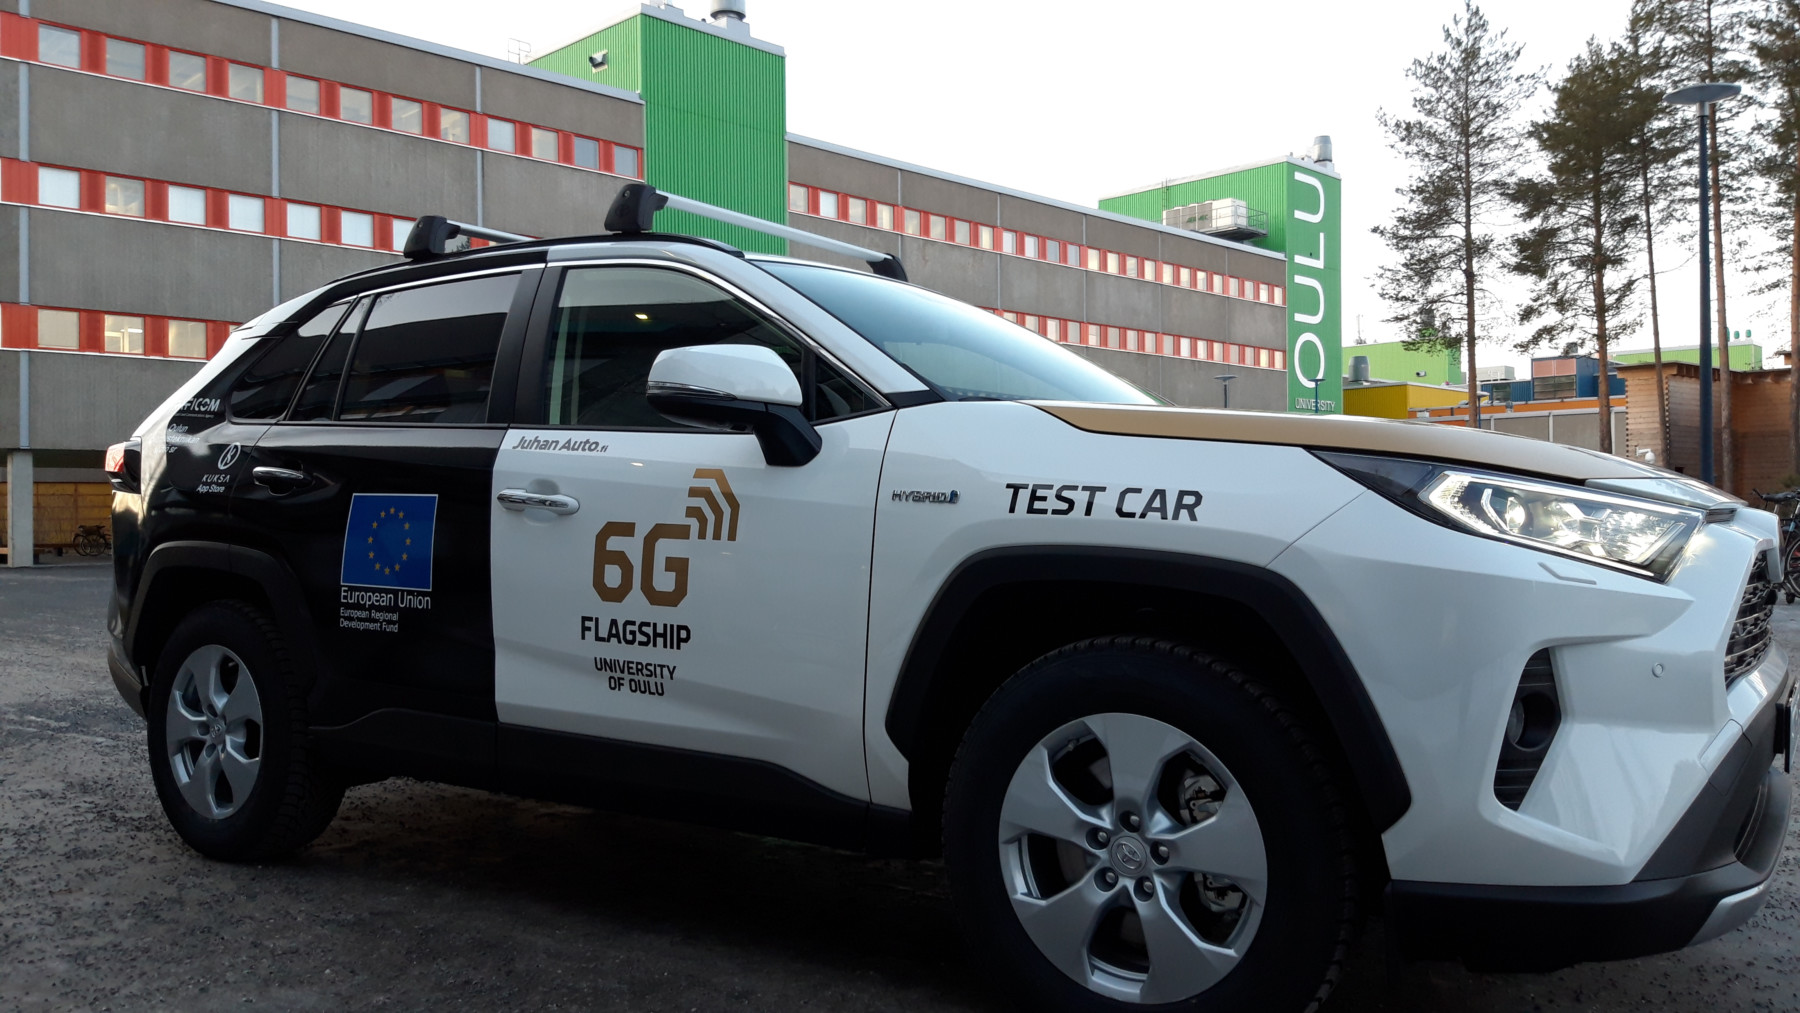 Con los letreros “6G Flagship” y “Test Car”, este coche autónomo está aparcado ante uno de los edificios de la Universidad de Oulu.